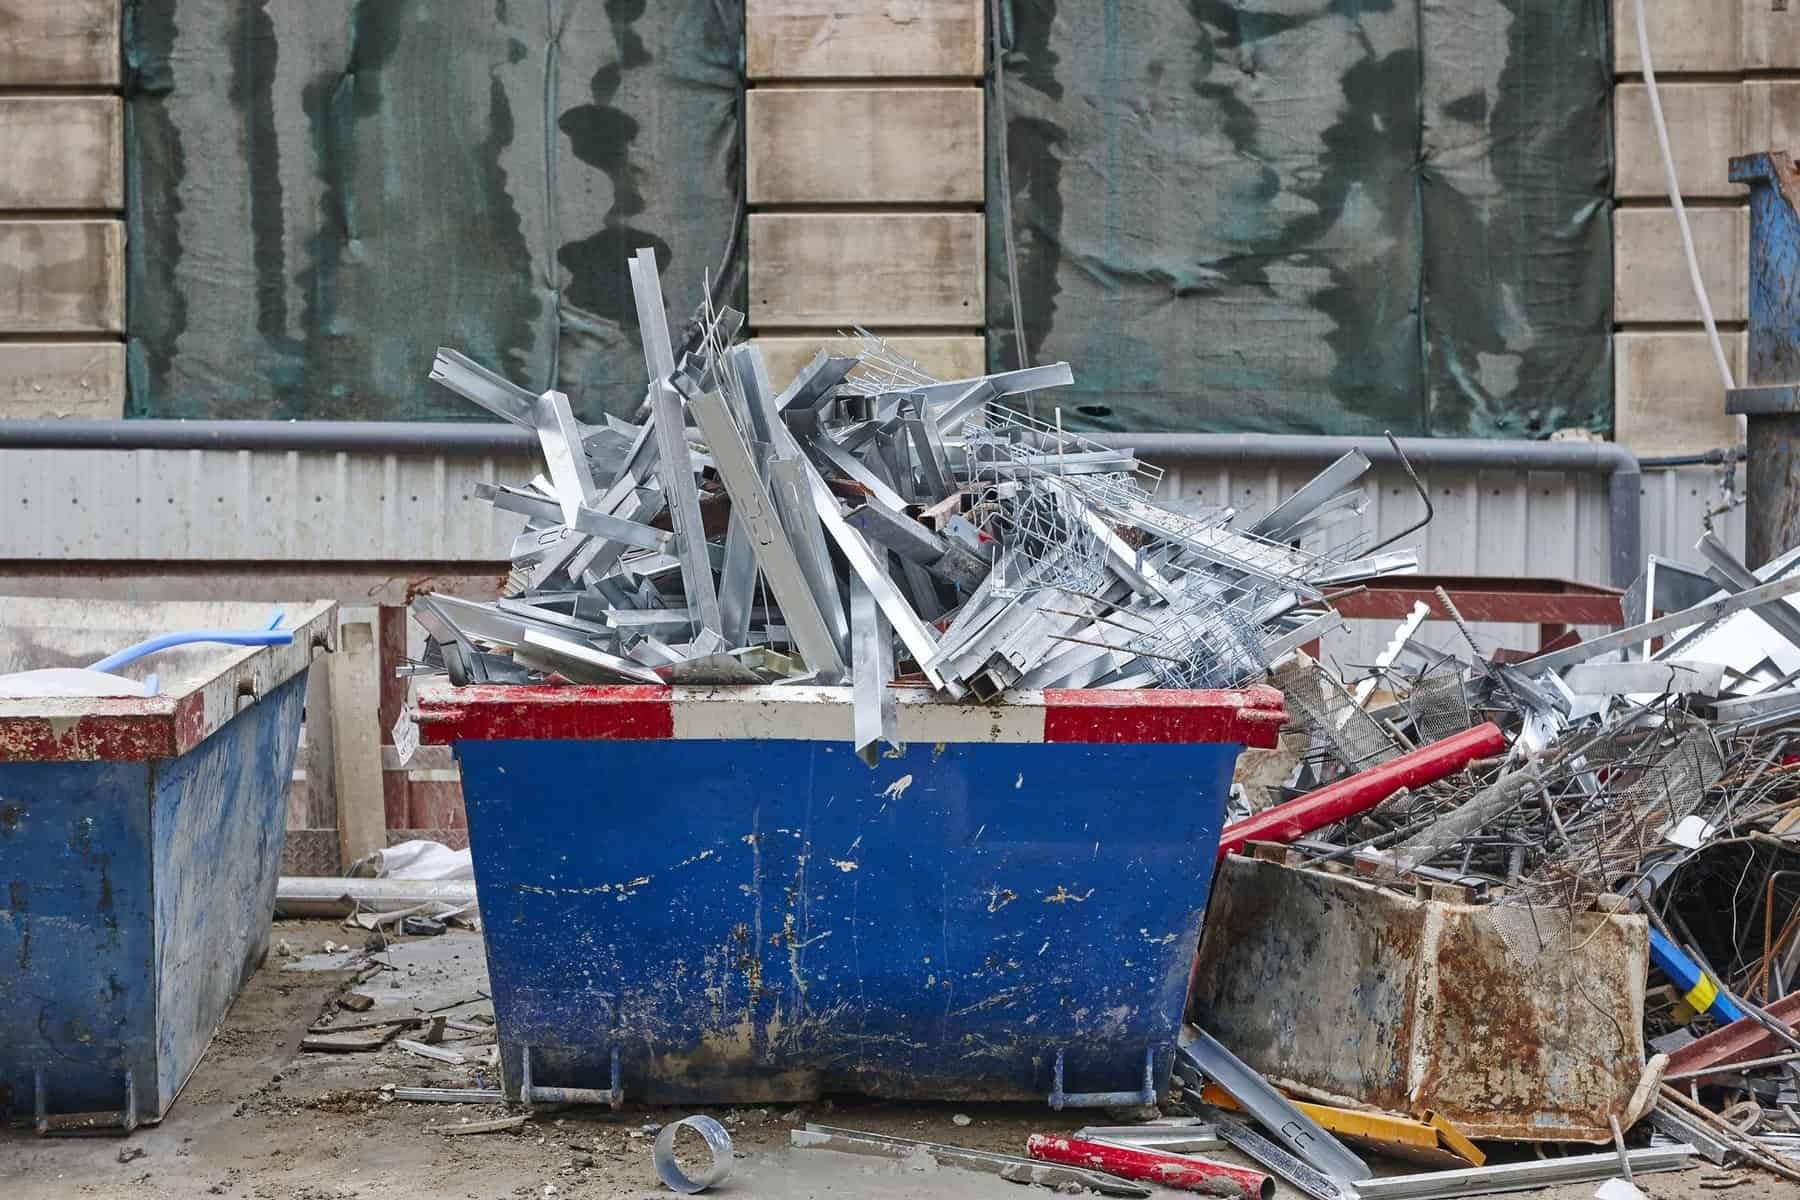 Removal Of Debris Construction Waste Building Demolition Devastation Background 1 